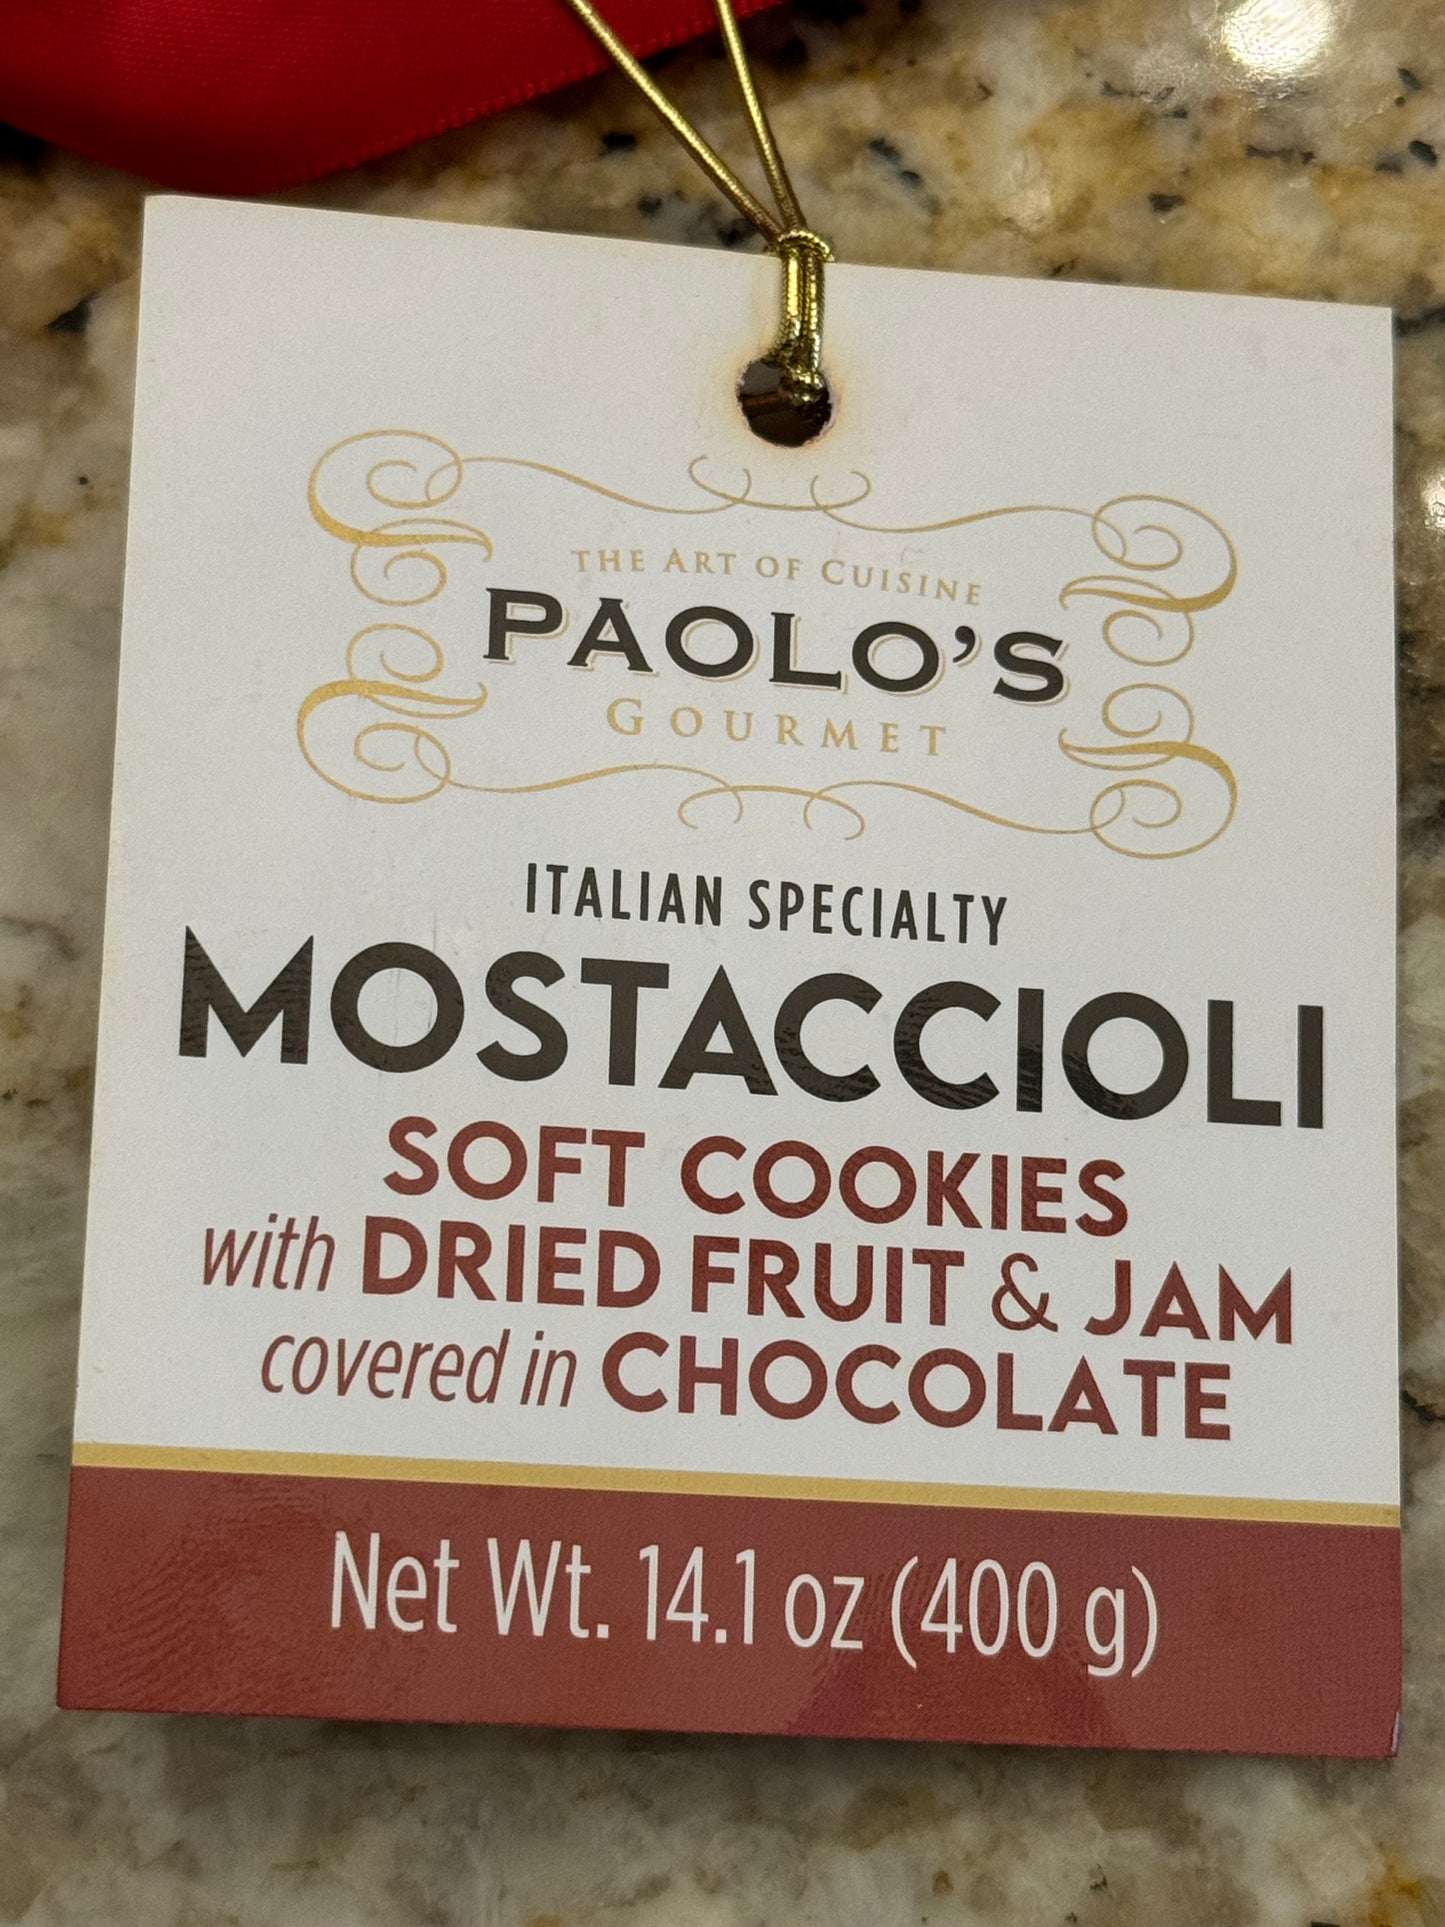 Paolo’s Mostaccioli